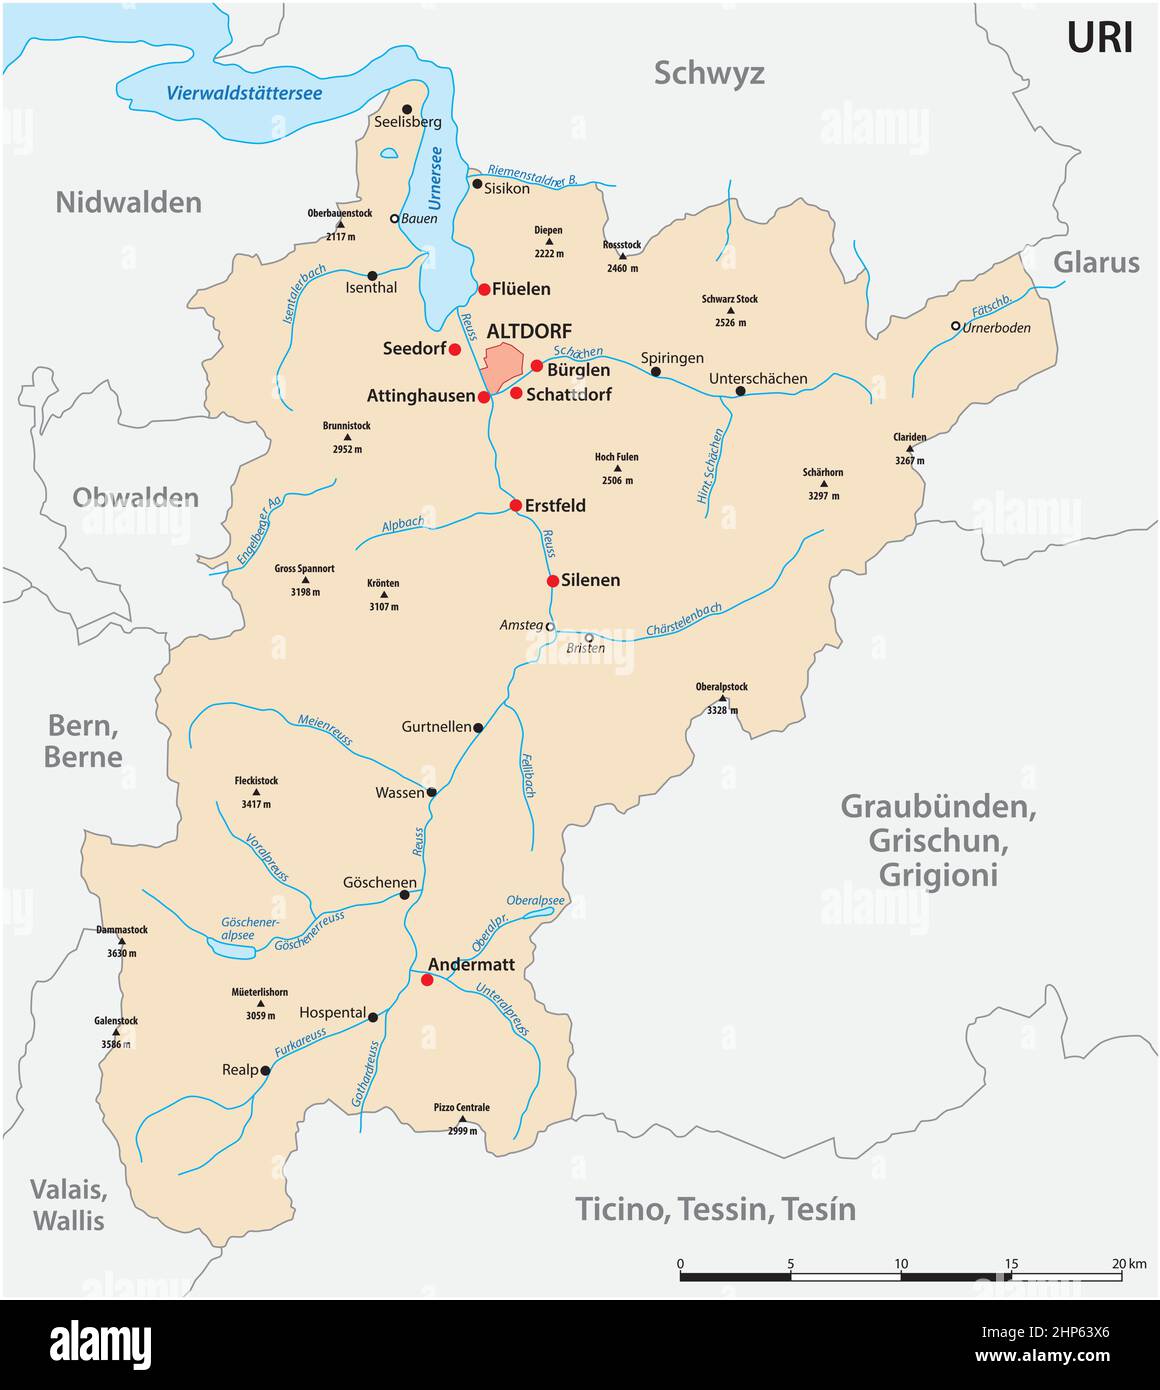 Schweizer landkarte Stock-Vektorgrafiken kaufen - Alamy